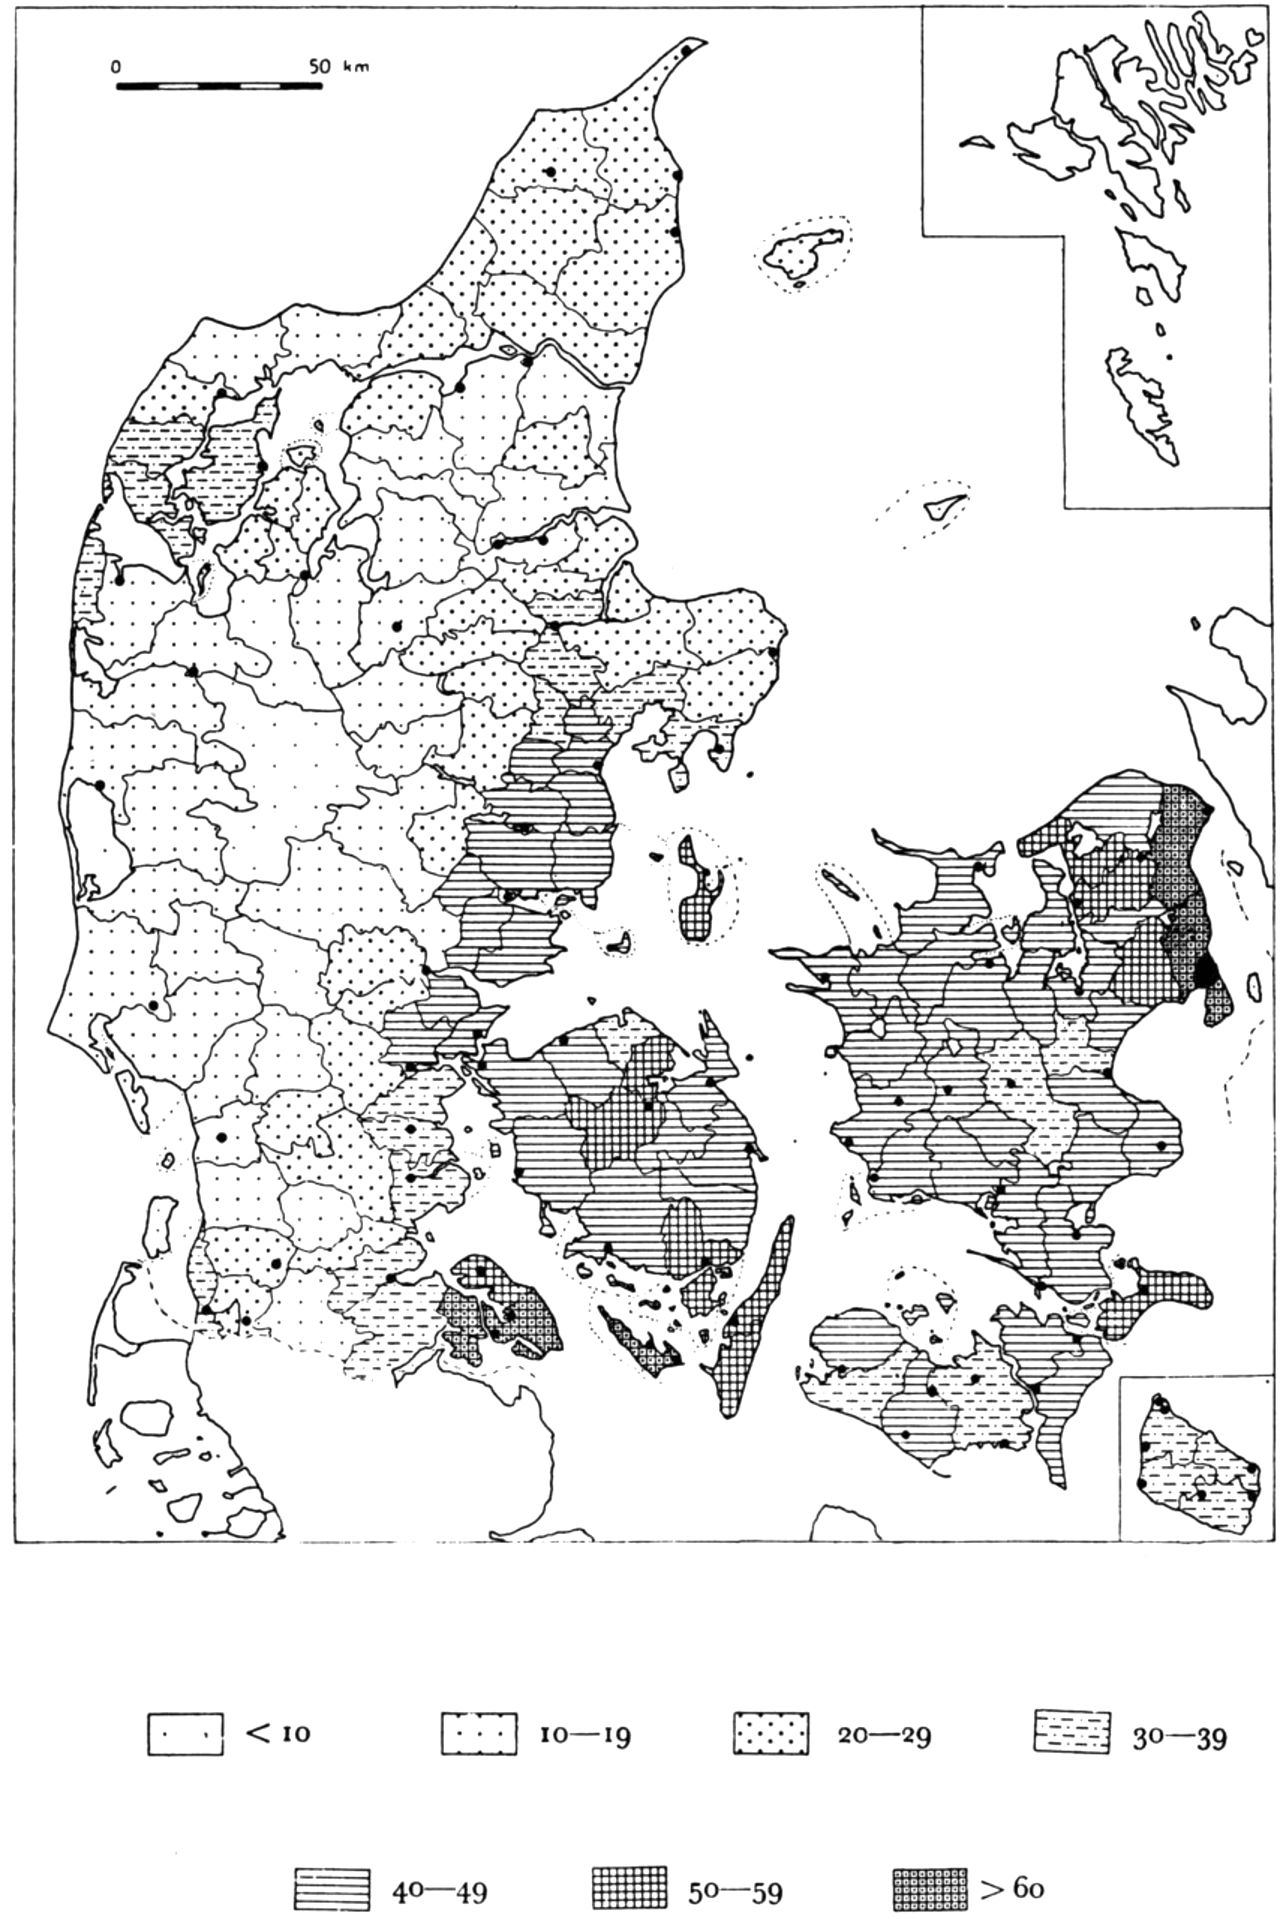 (Kort). Befolkningstætheden 1850. (Indb. pr. km2). De sorte prikker er de daværende købstæder og flækker.